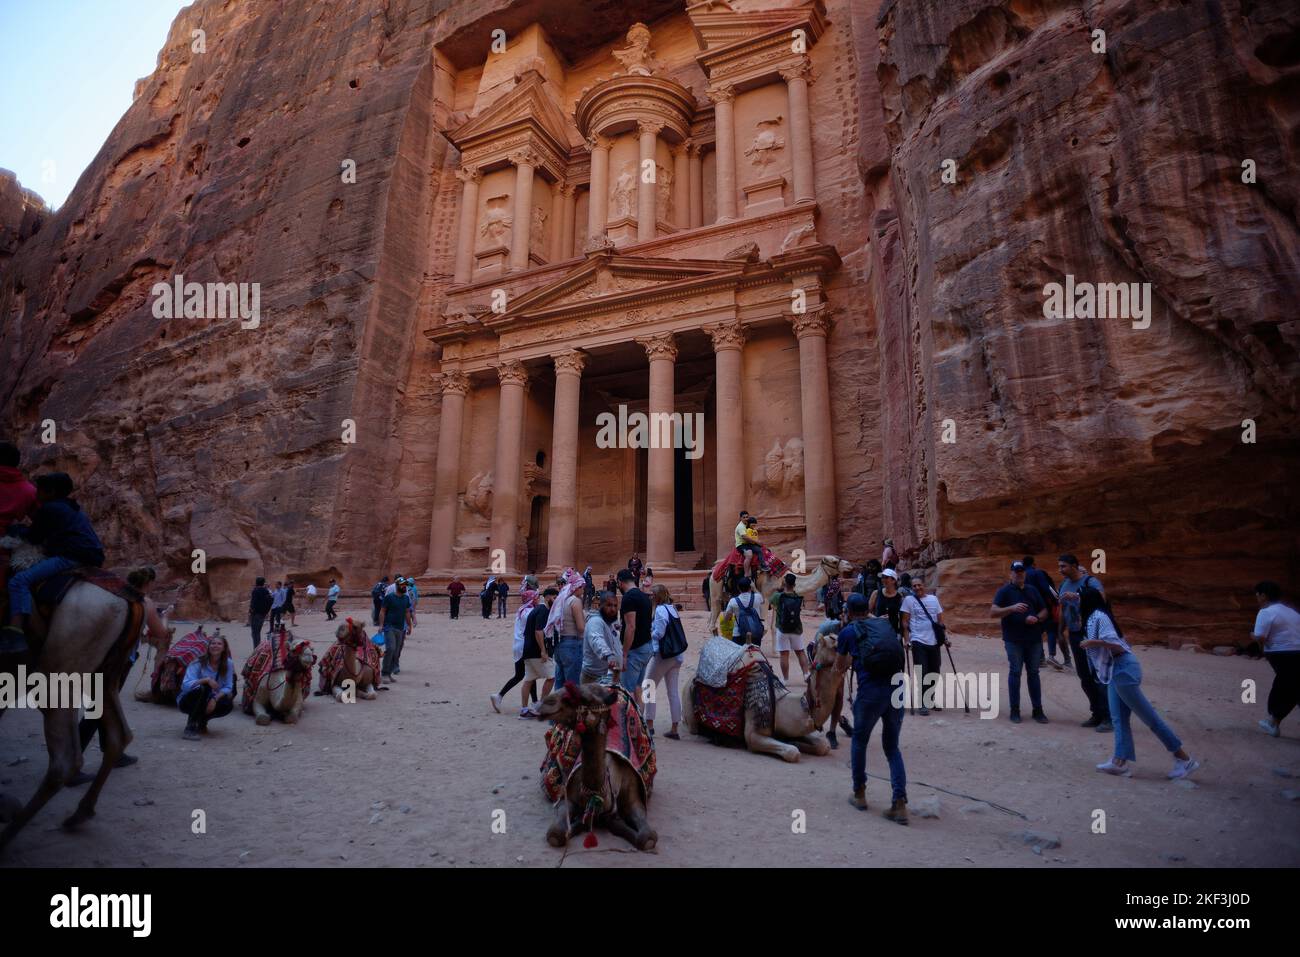 Patrimonio de la Humanidad de la antigua ciudad de Petra en Jordania. Foto de stock